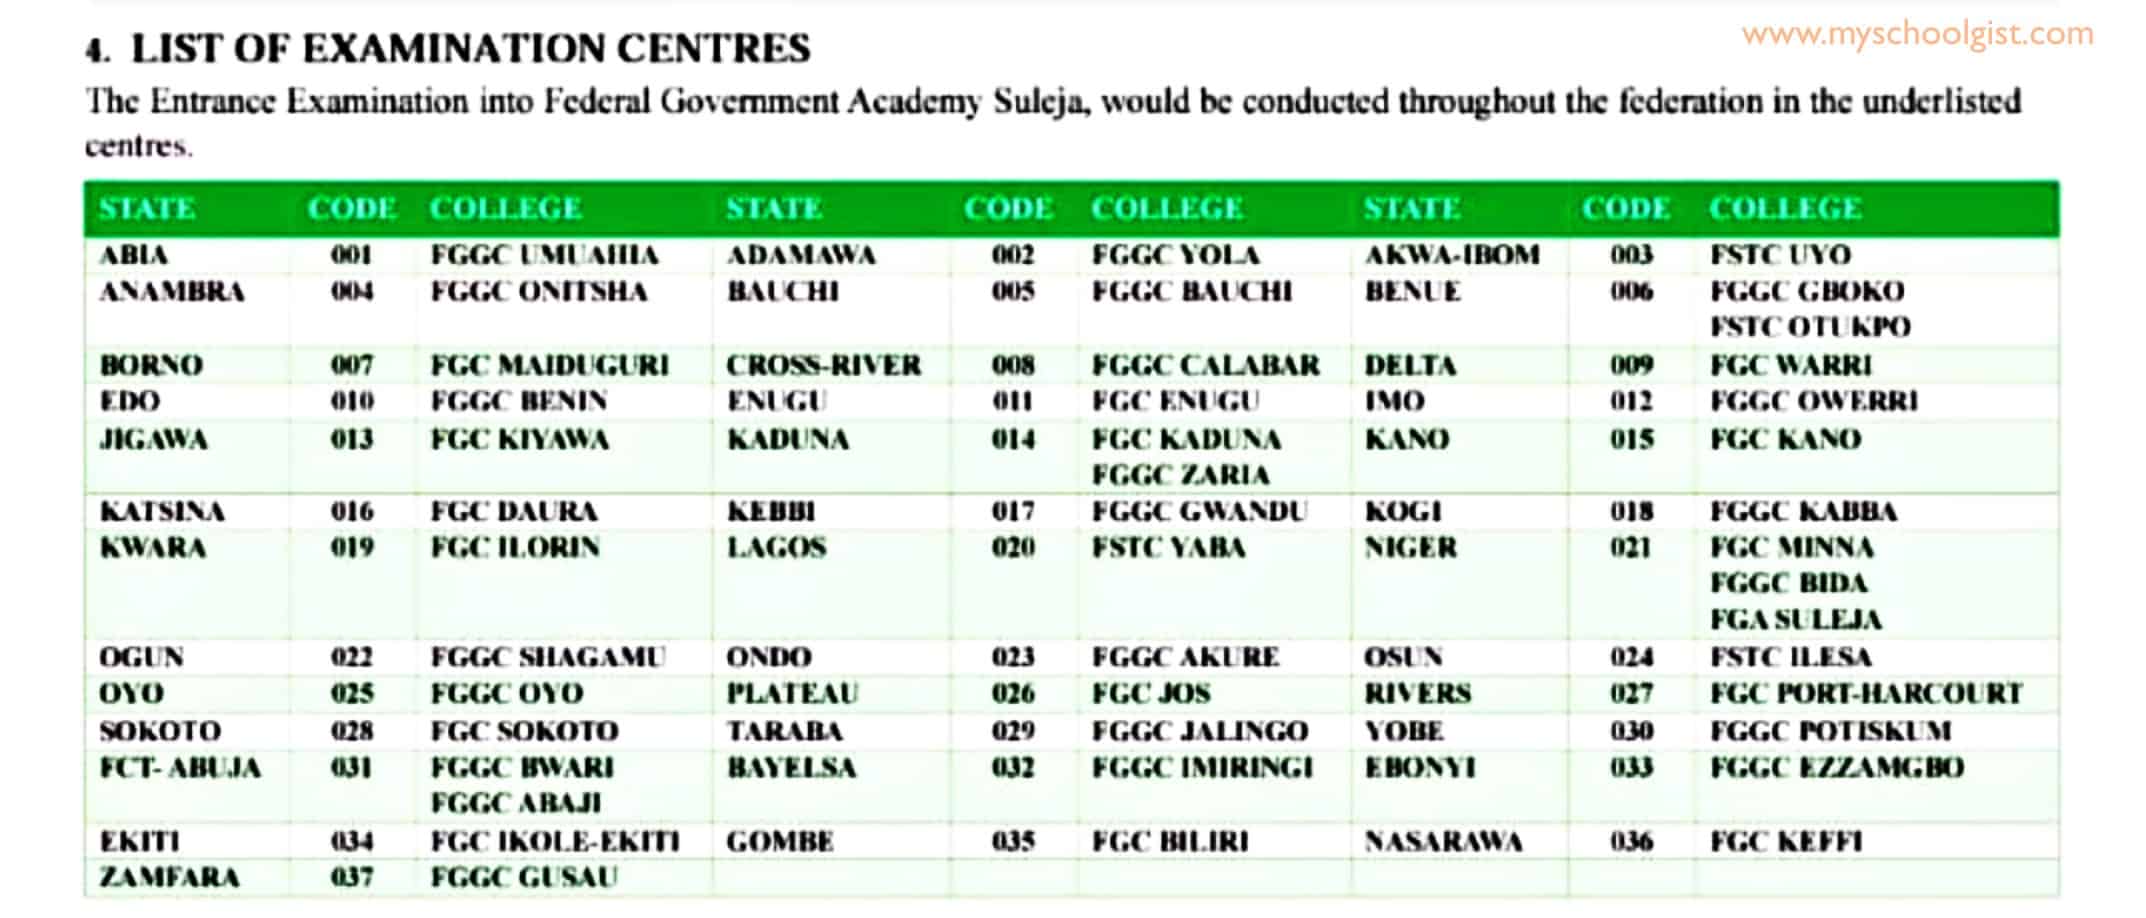 Federal Government Academy Suleja Exam Centres